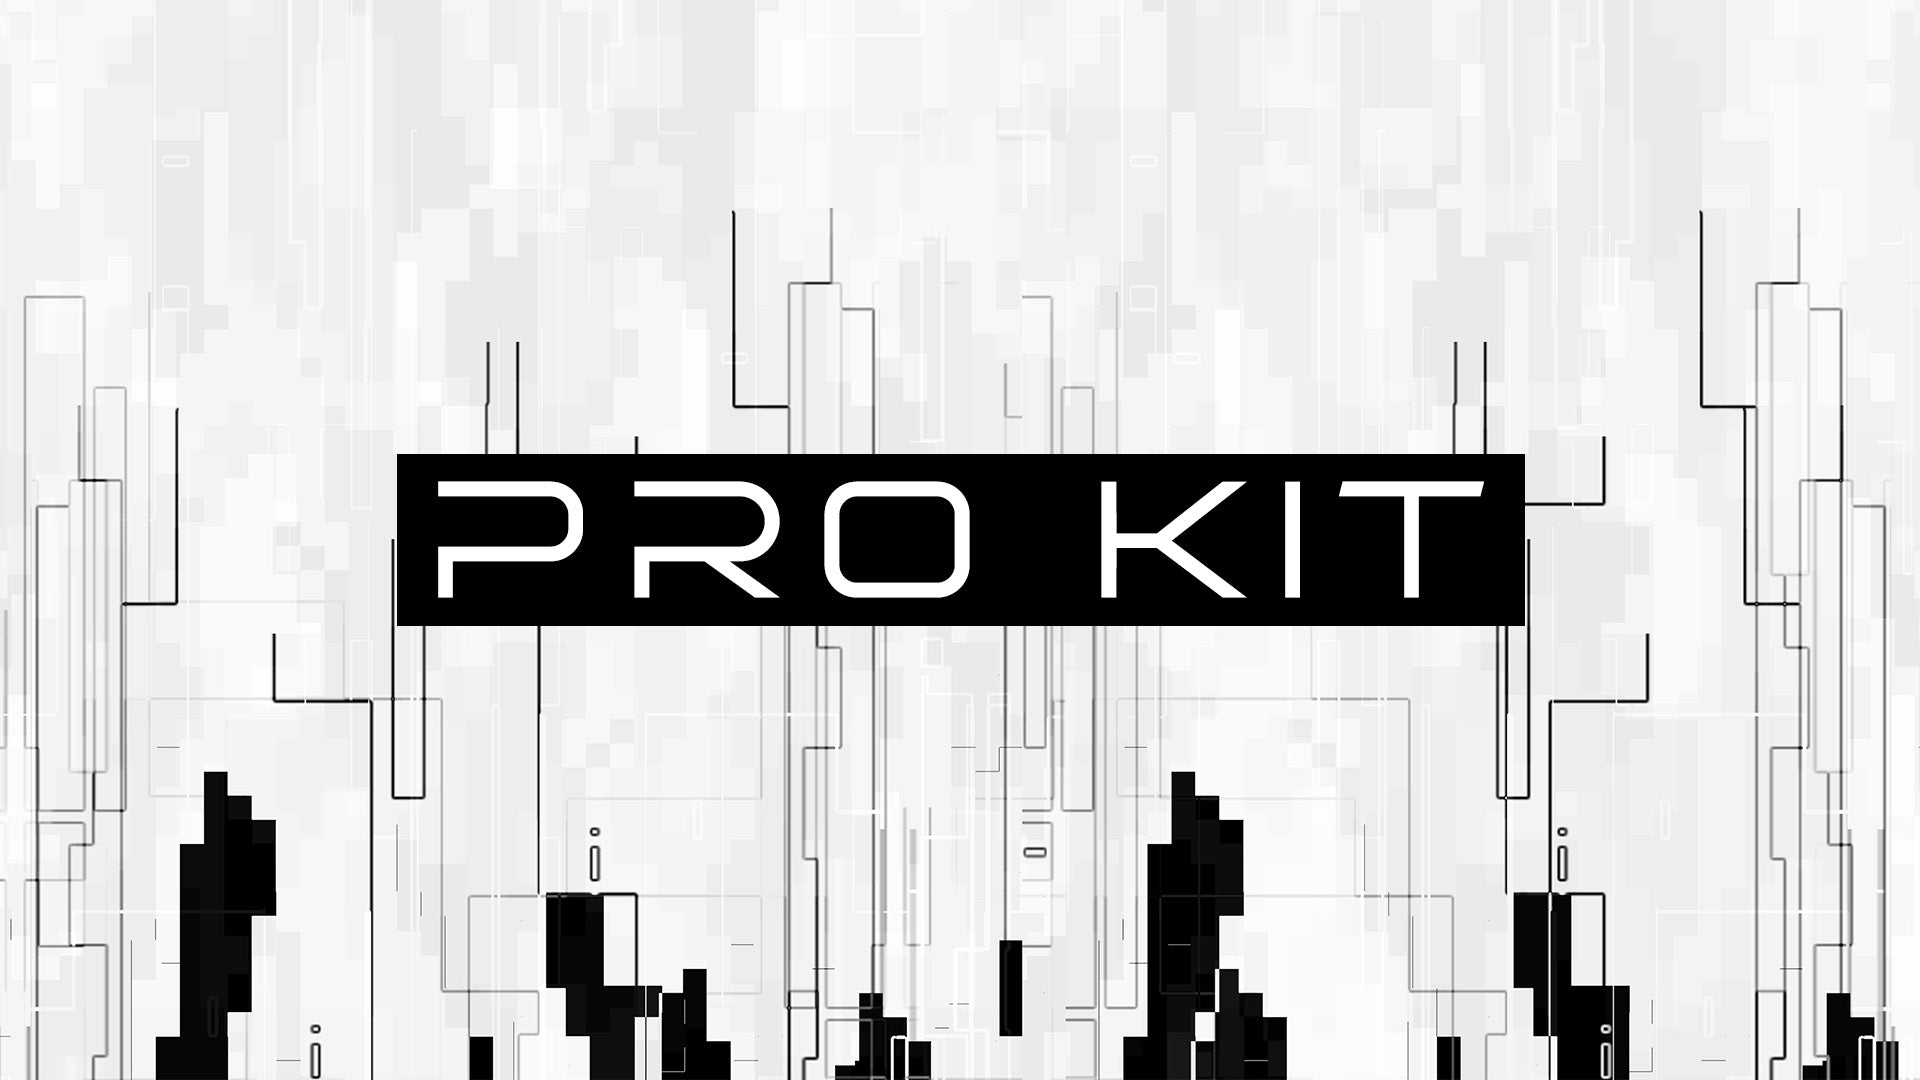 Pro Kit